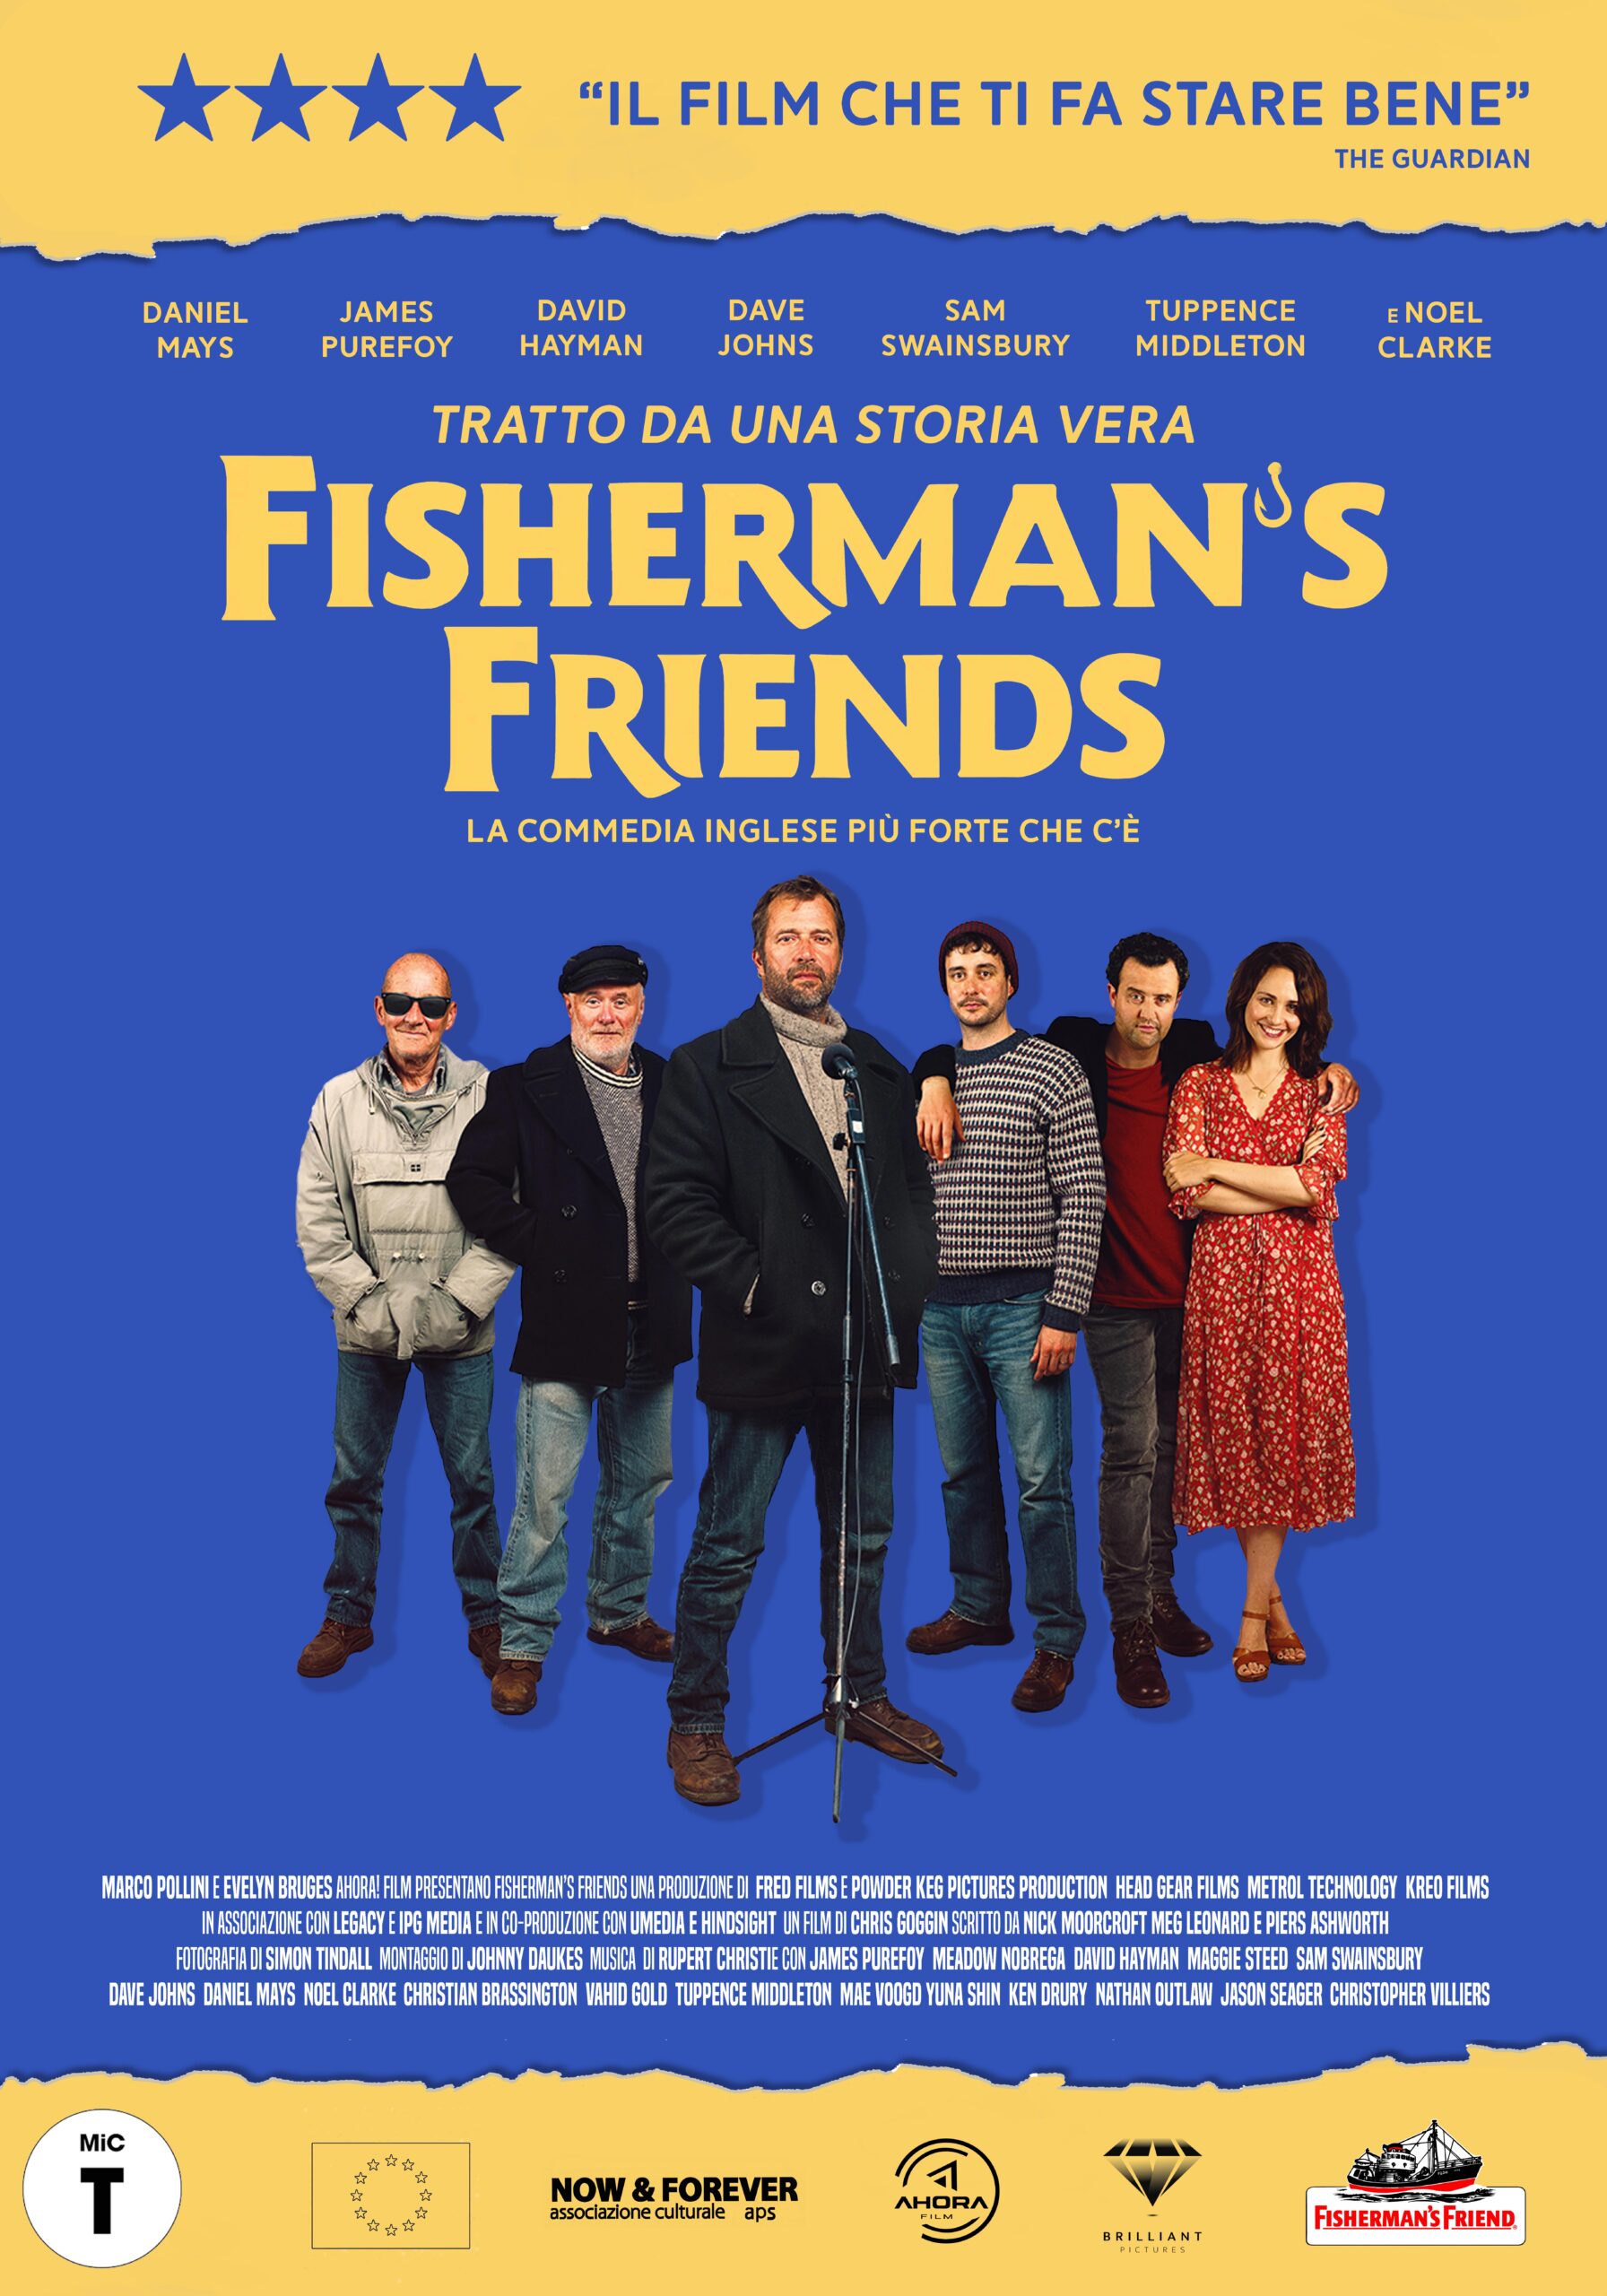 Fisherman's Friends, film inglese ambientato in Cornovaglia, al cinema dal 23 novembre